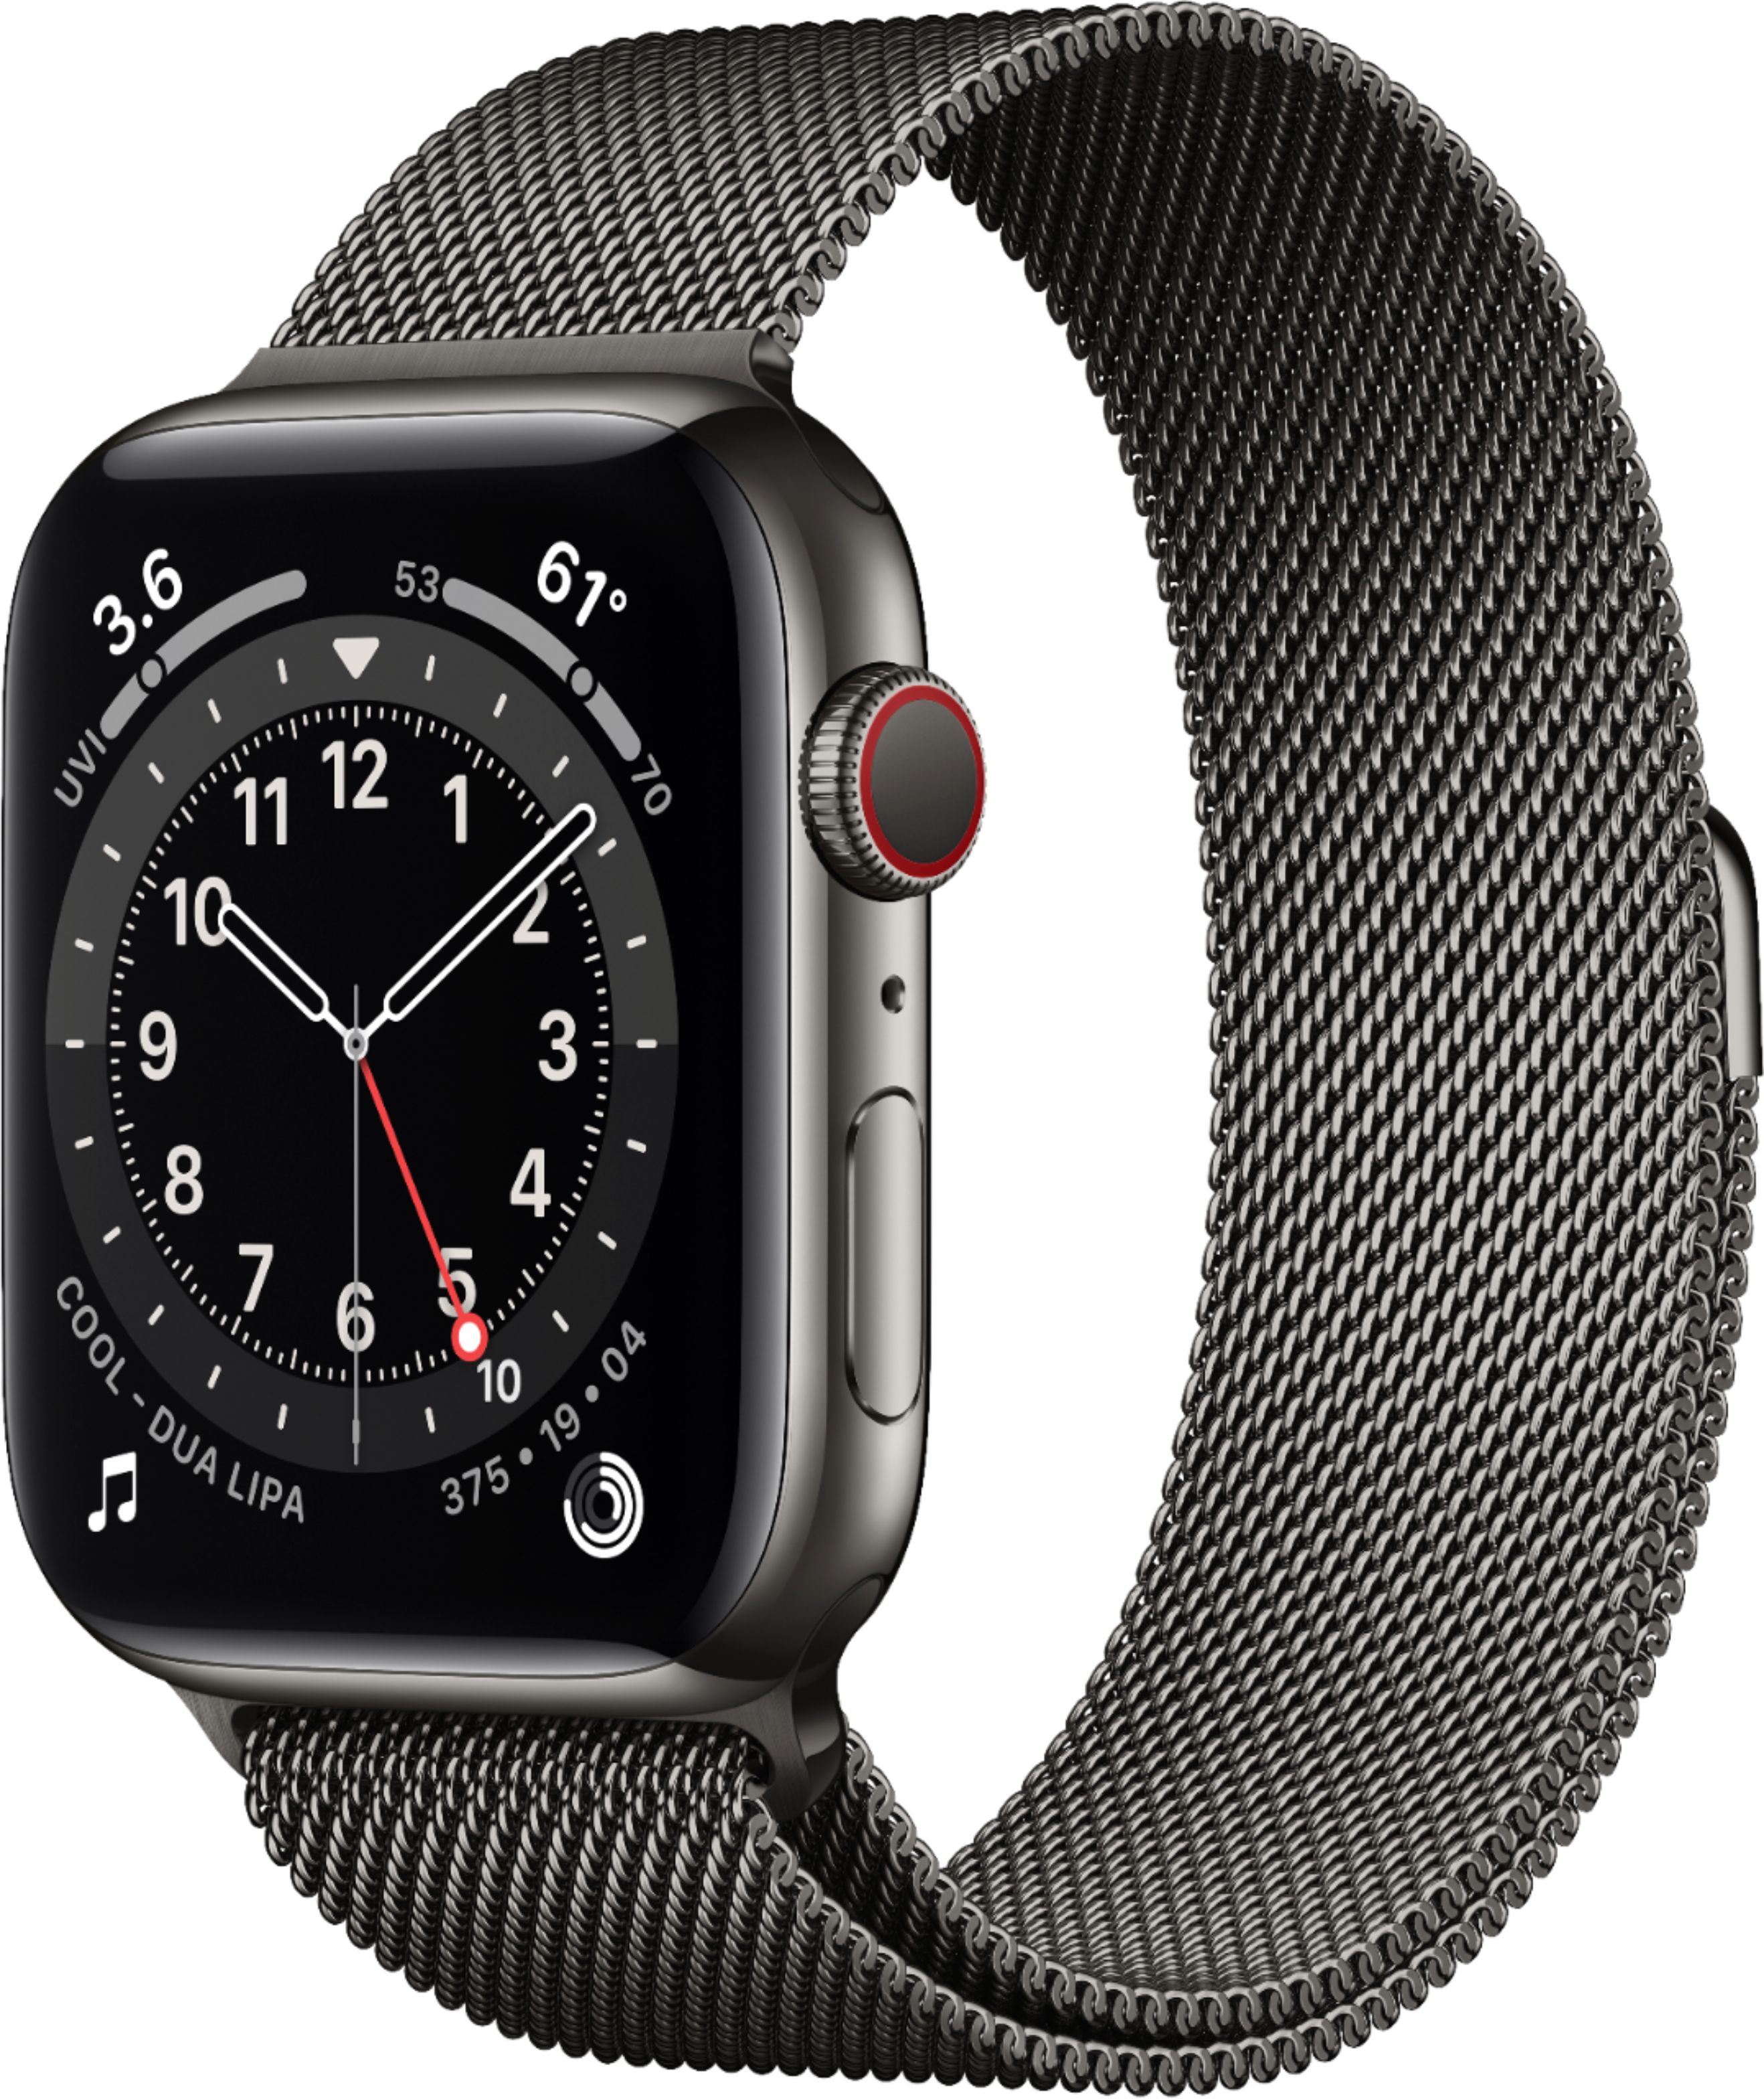 売りオーダー Watch Apple Series グラファイトステンレス44mm 6 その他